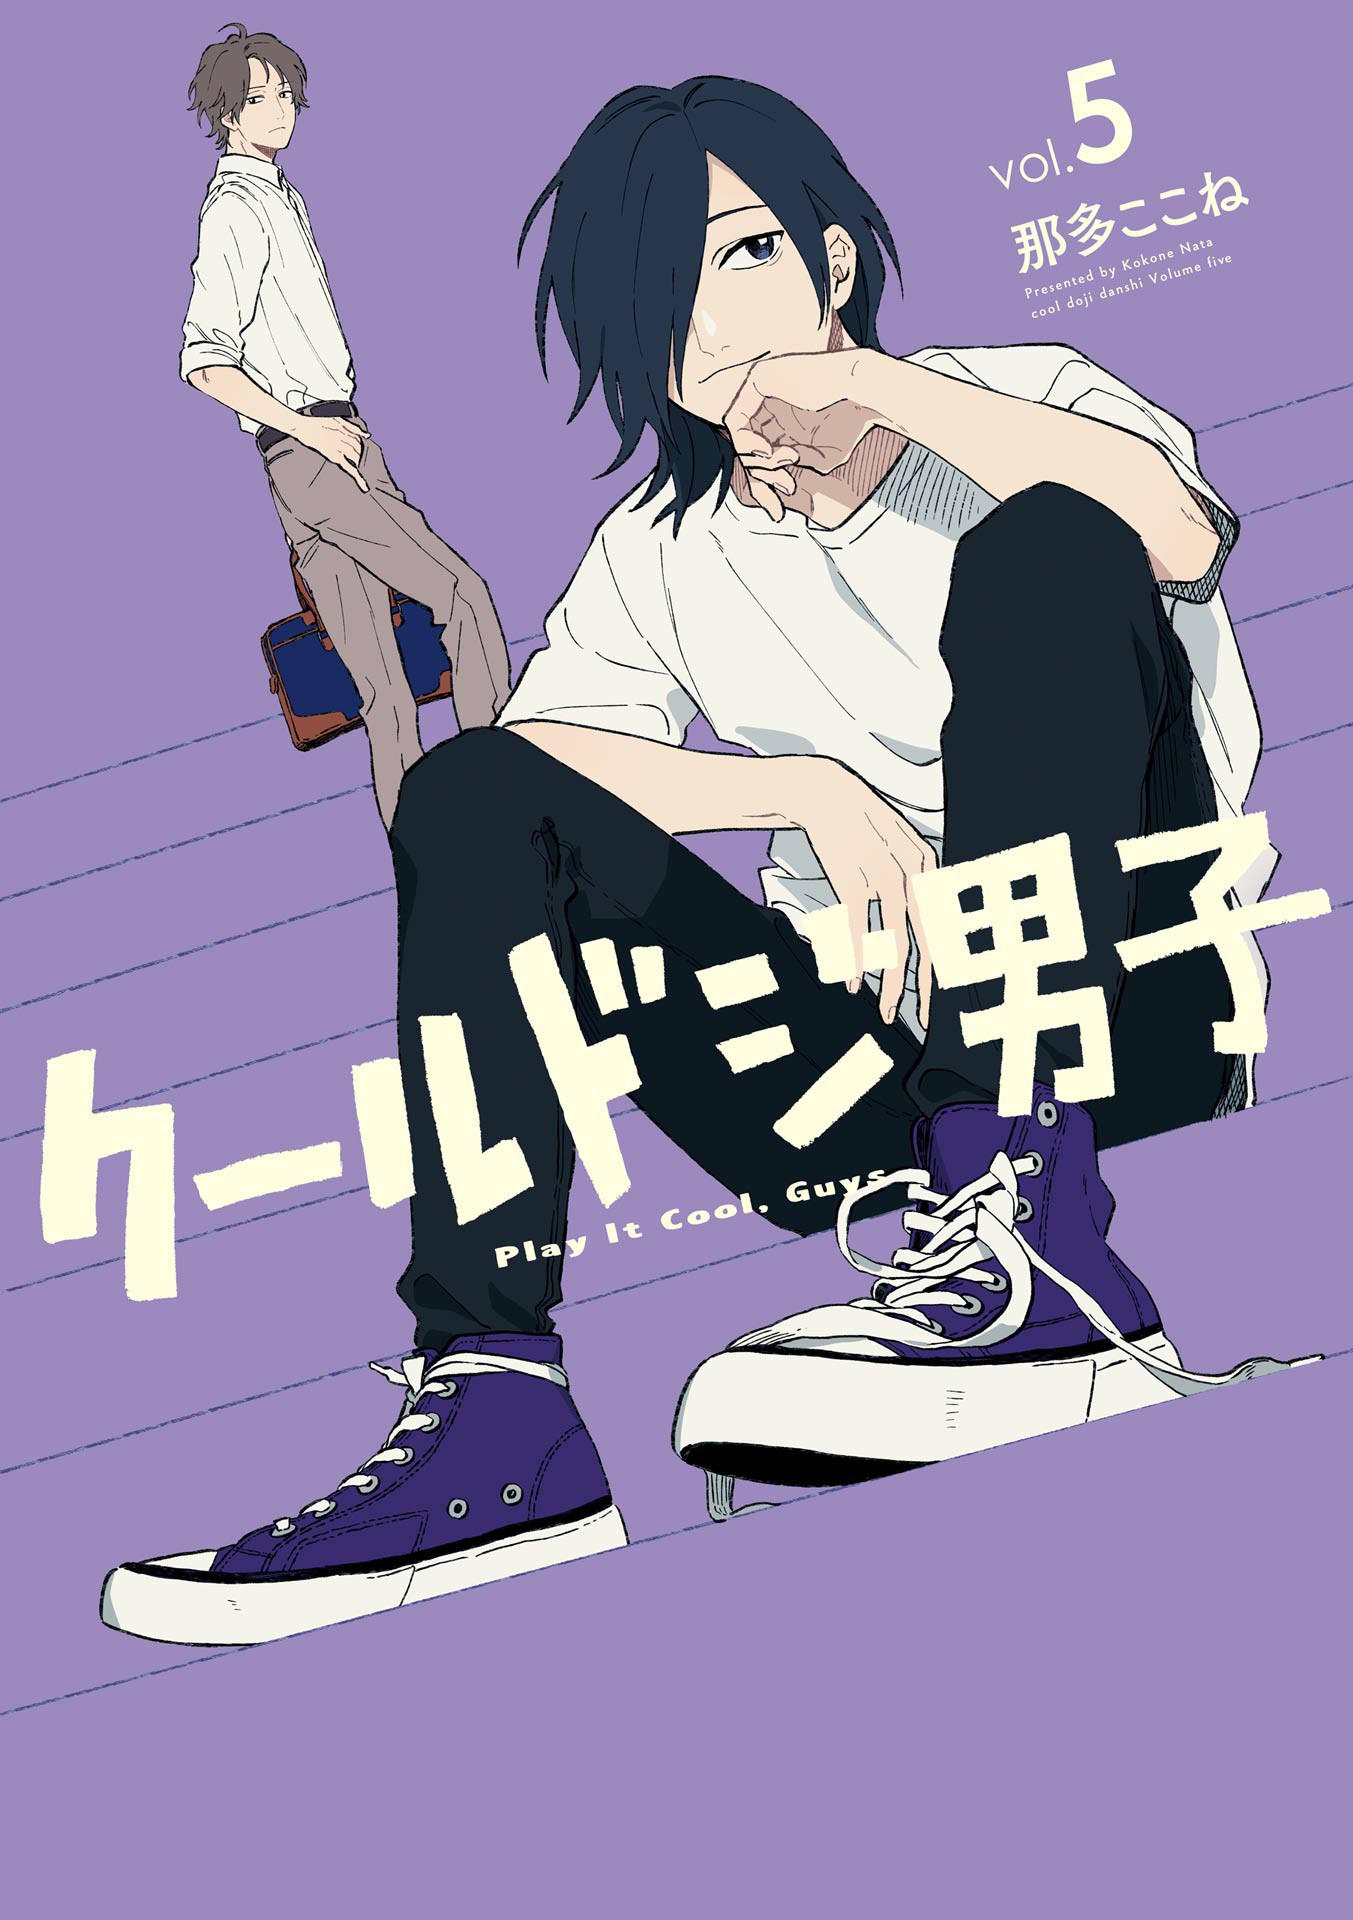 Cool Doji Danshi - Play It Cool Guys - Zerochan Anime Image Board